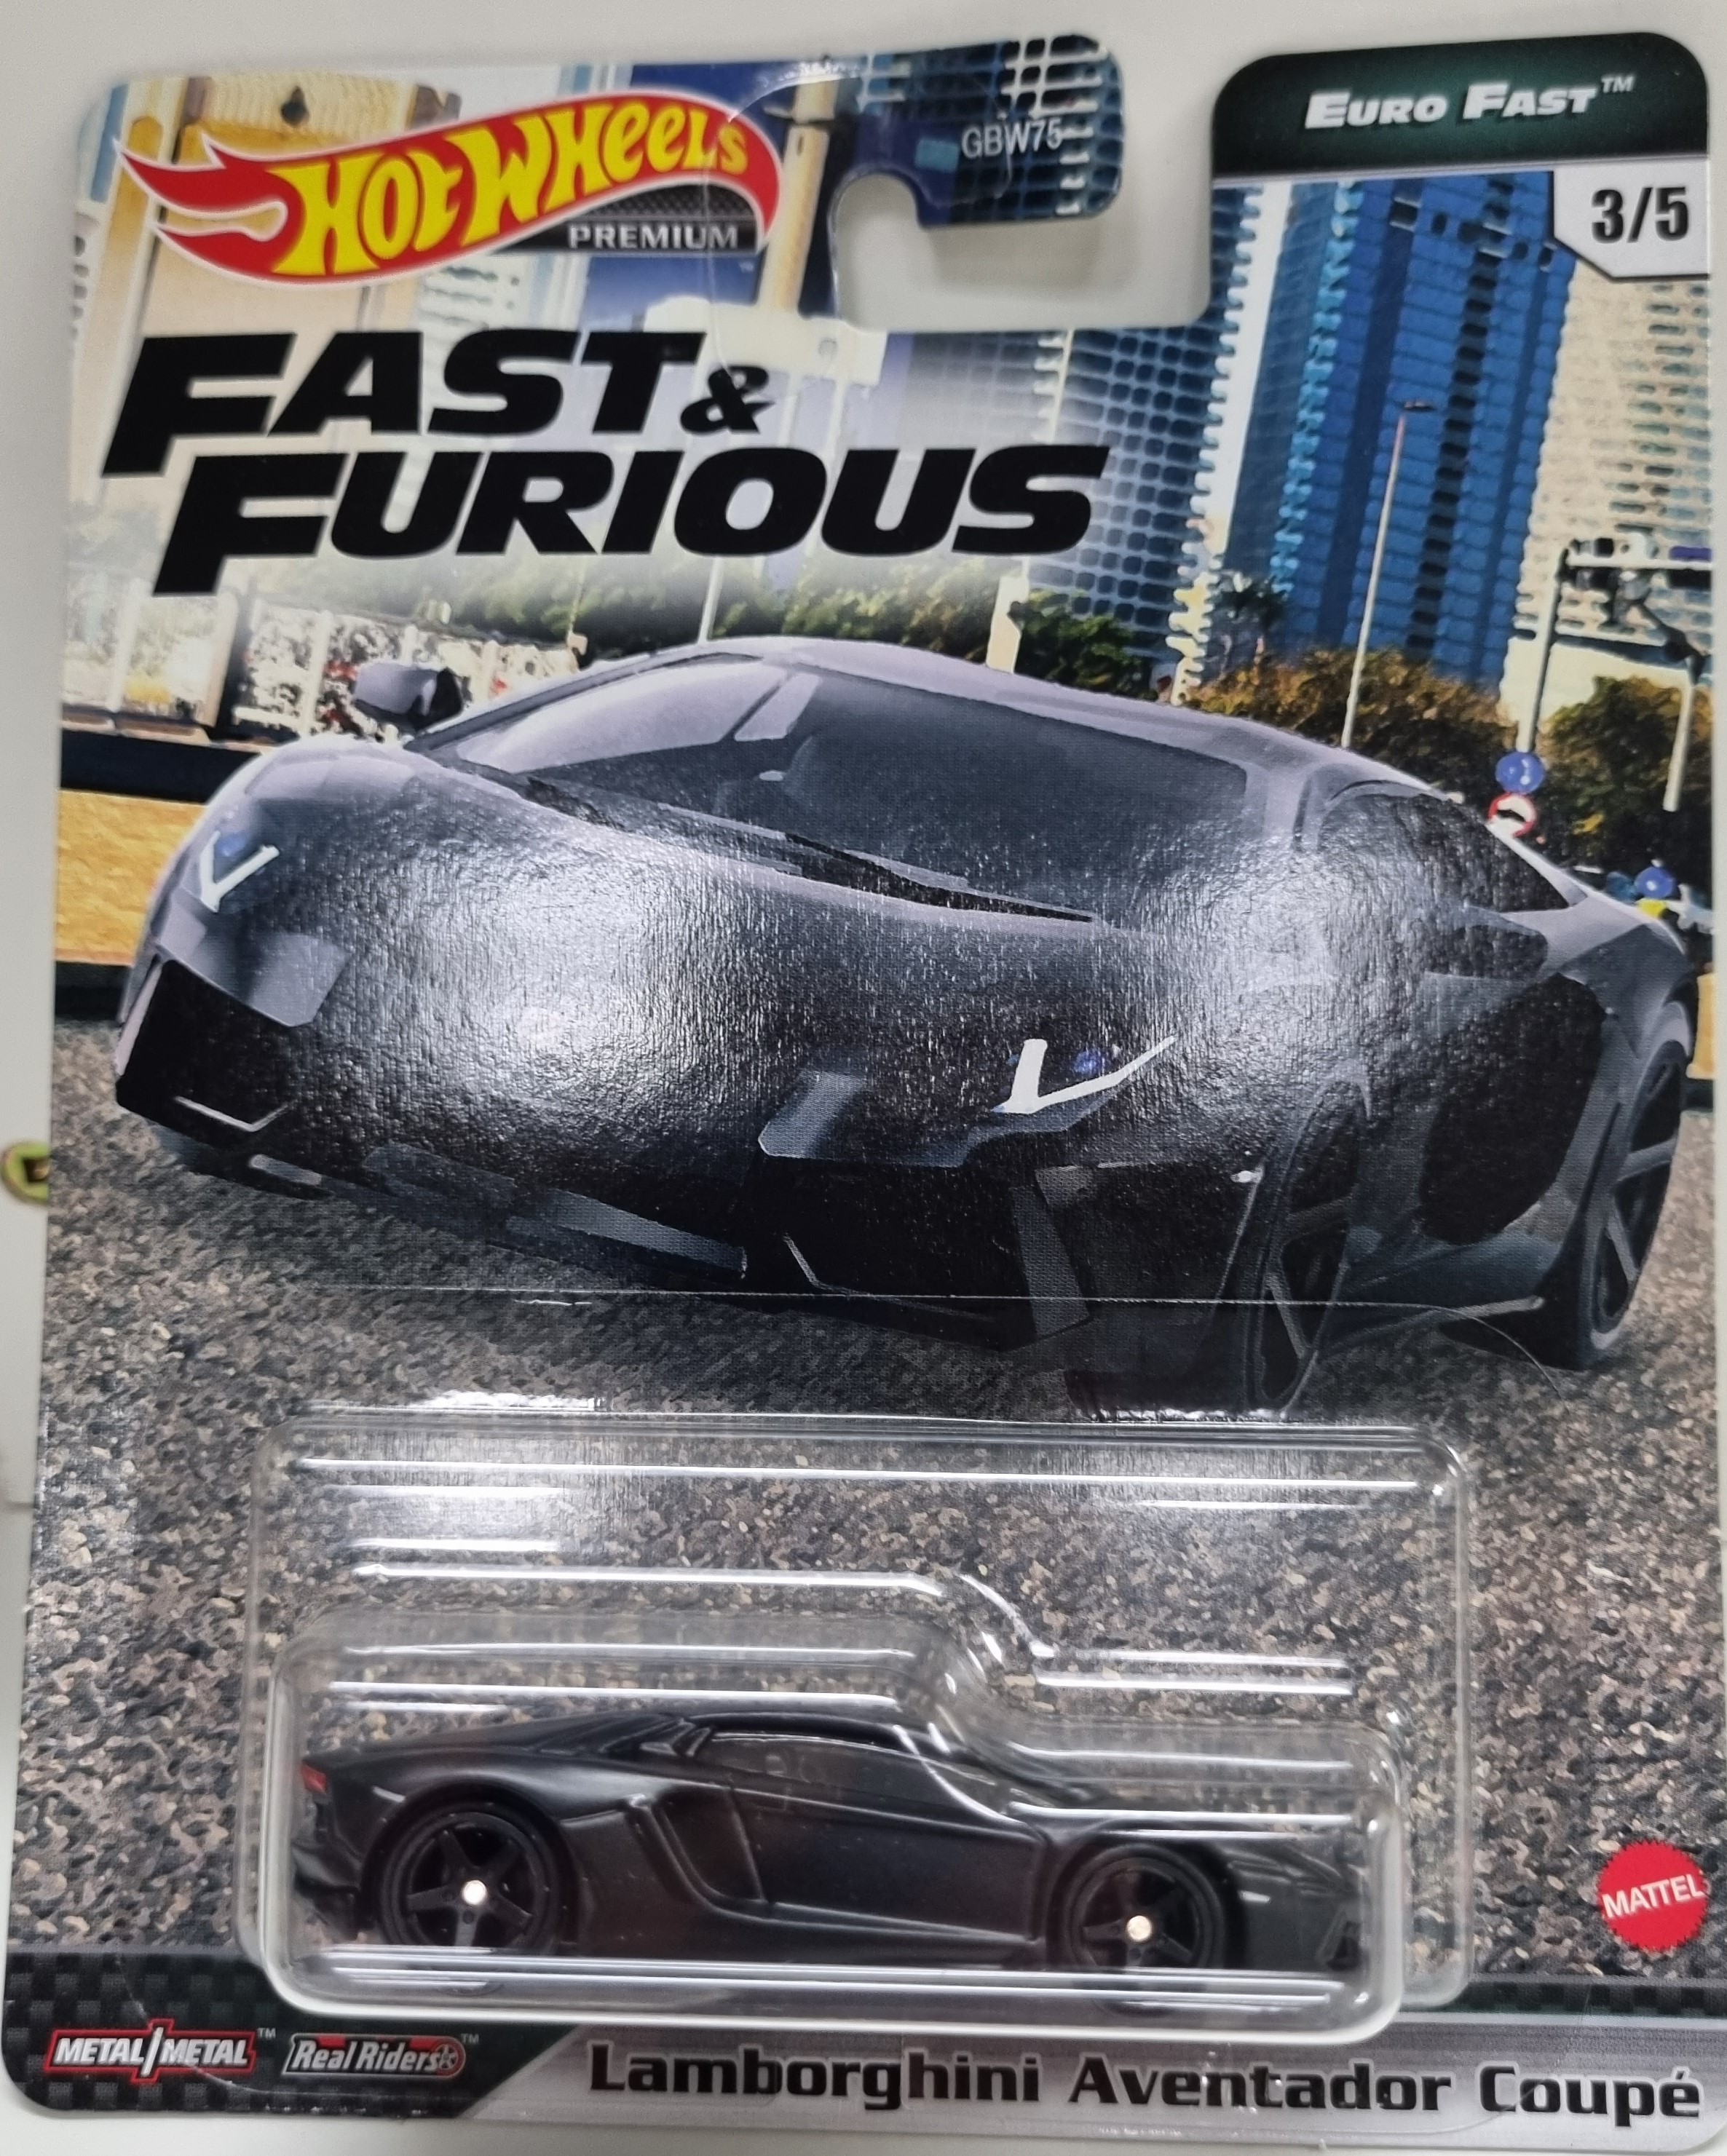 Hot Wheels Fast & Furious Lamborghini Aventador Coupe